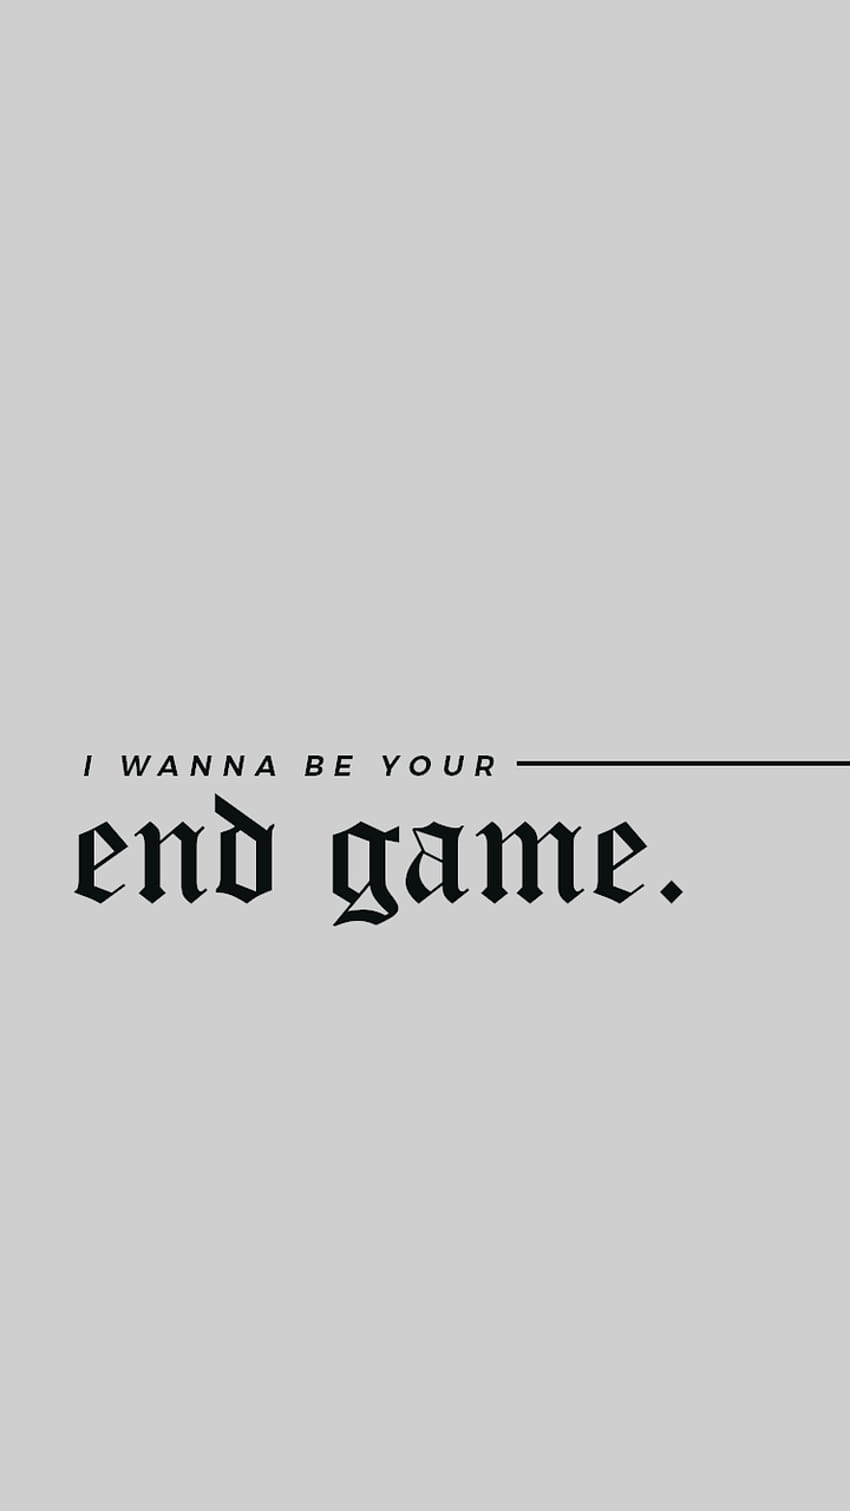 Taylor Swift - End Game: Canción con letra